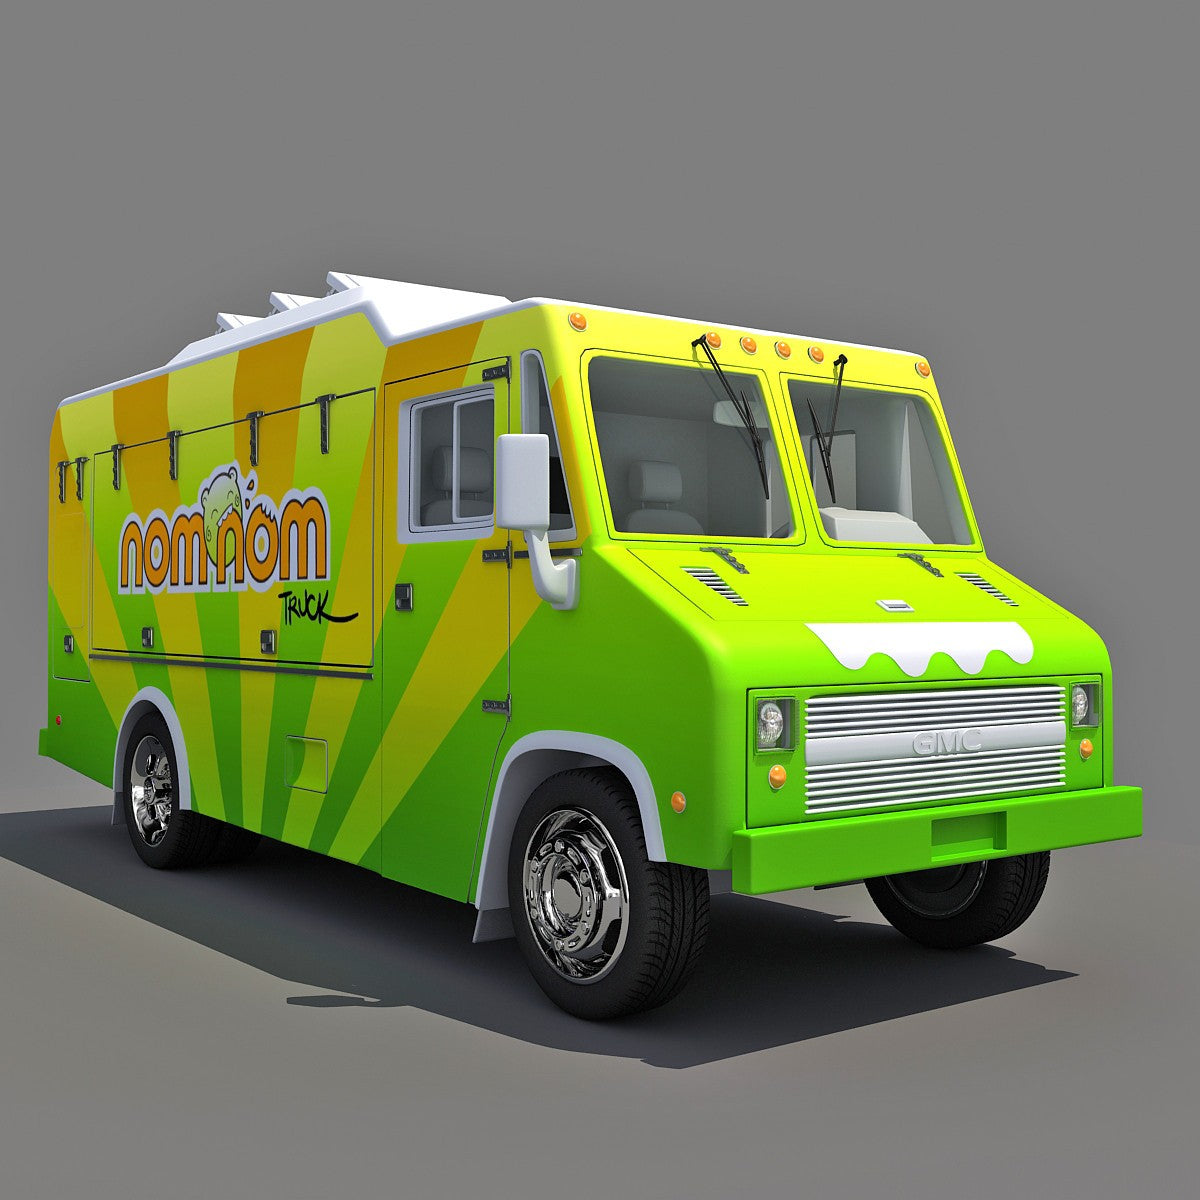  3D  Food  Trucks  Models 3D  Horse